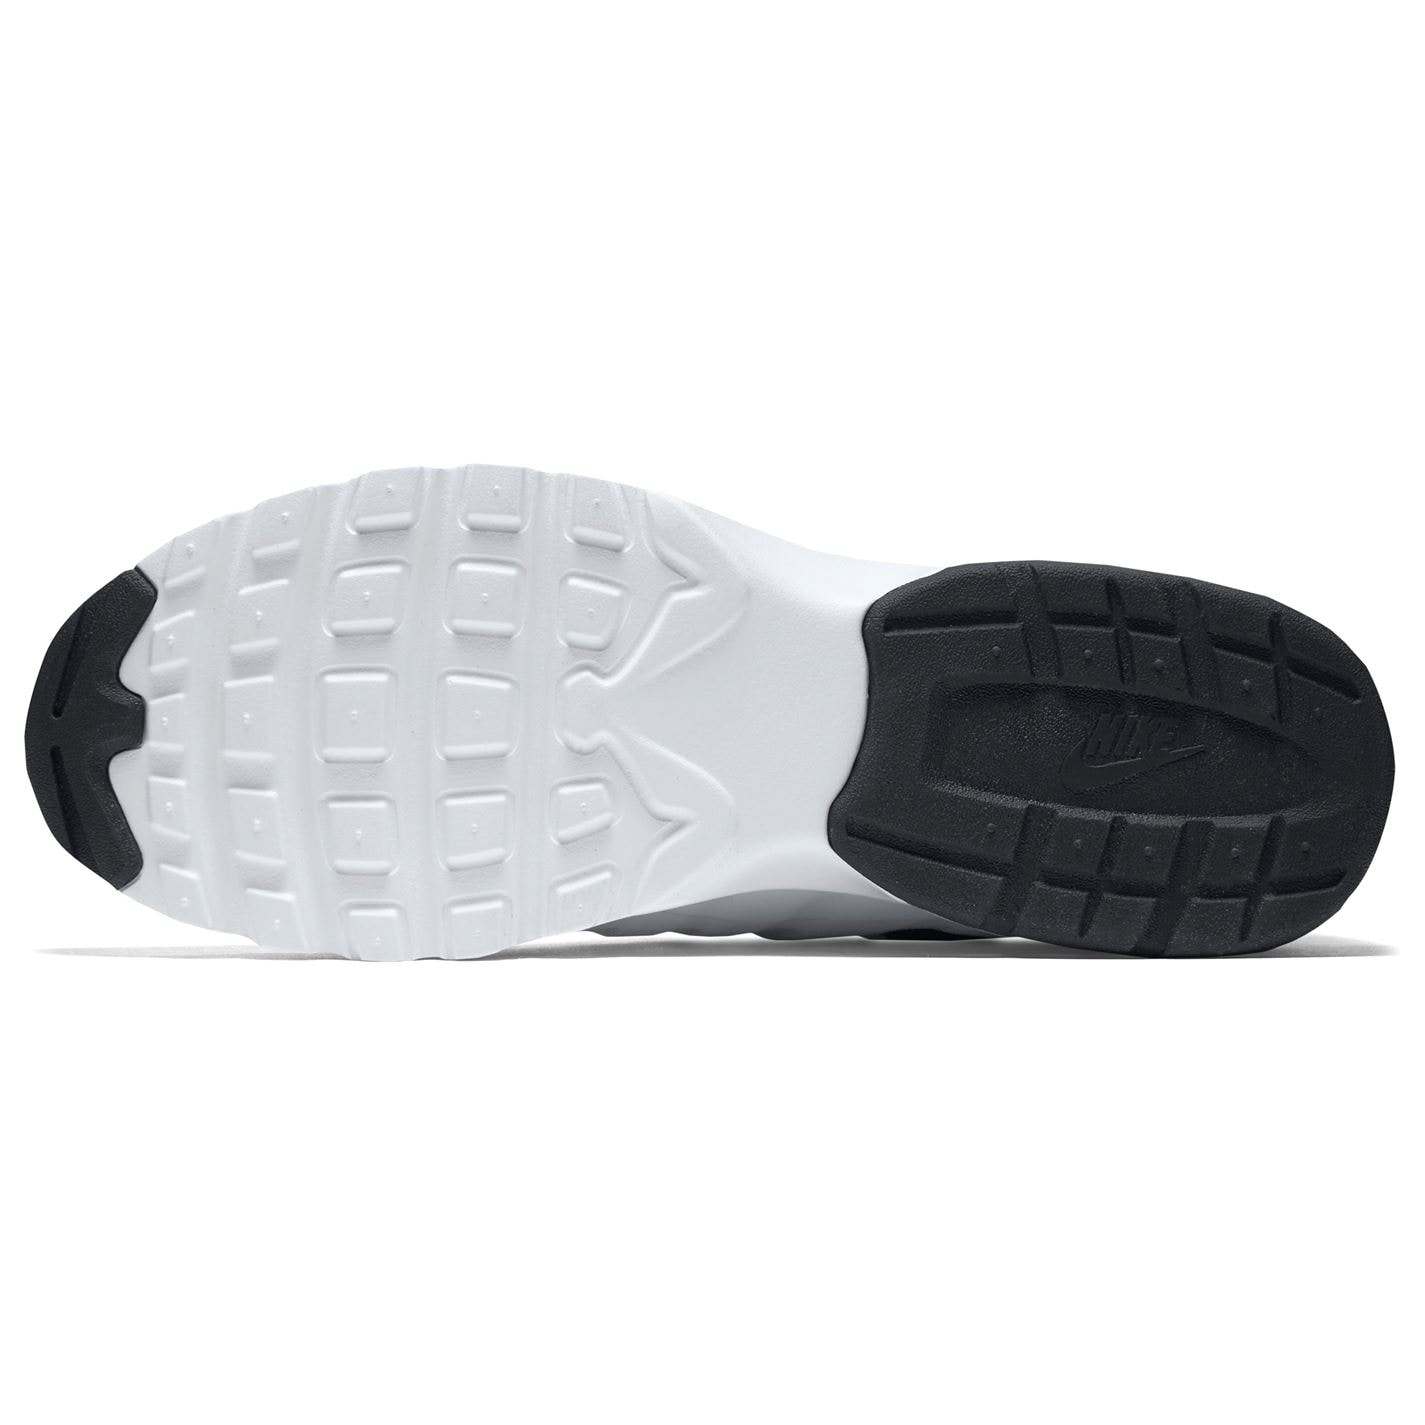 Adidasi sport Nike Air Max Invigor pentru Barbati alb negru